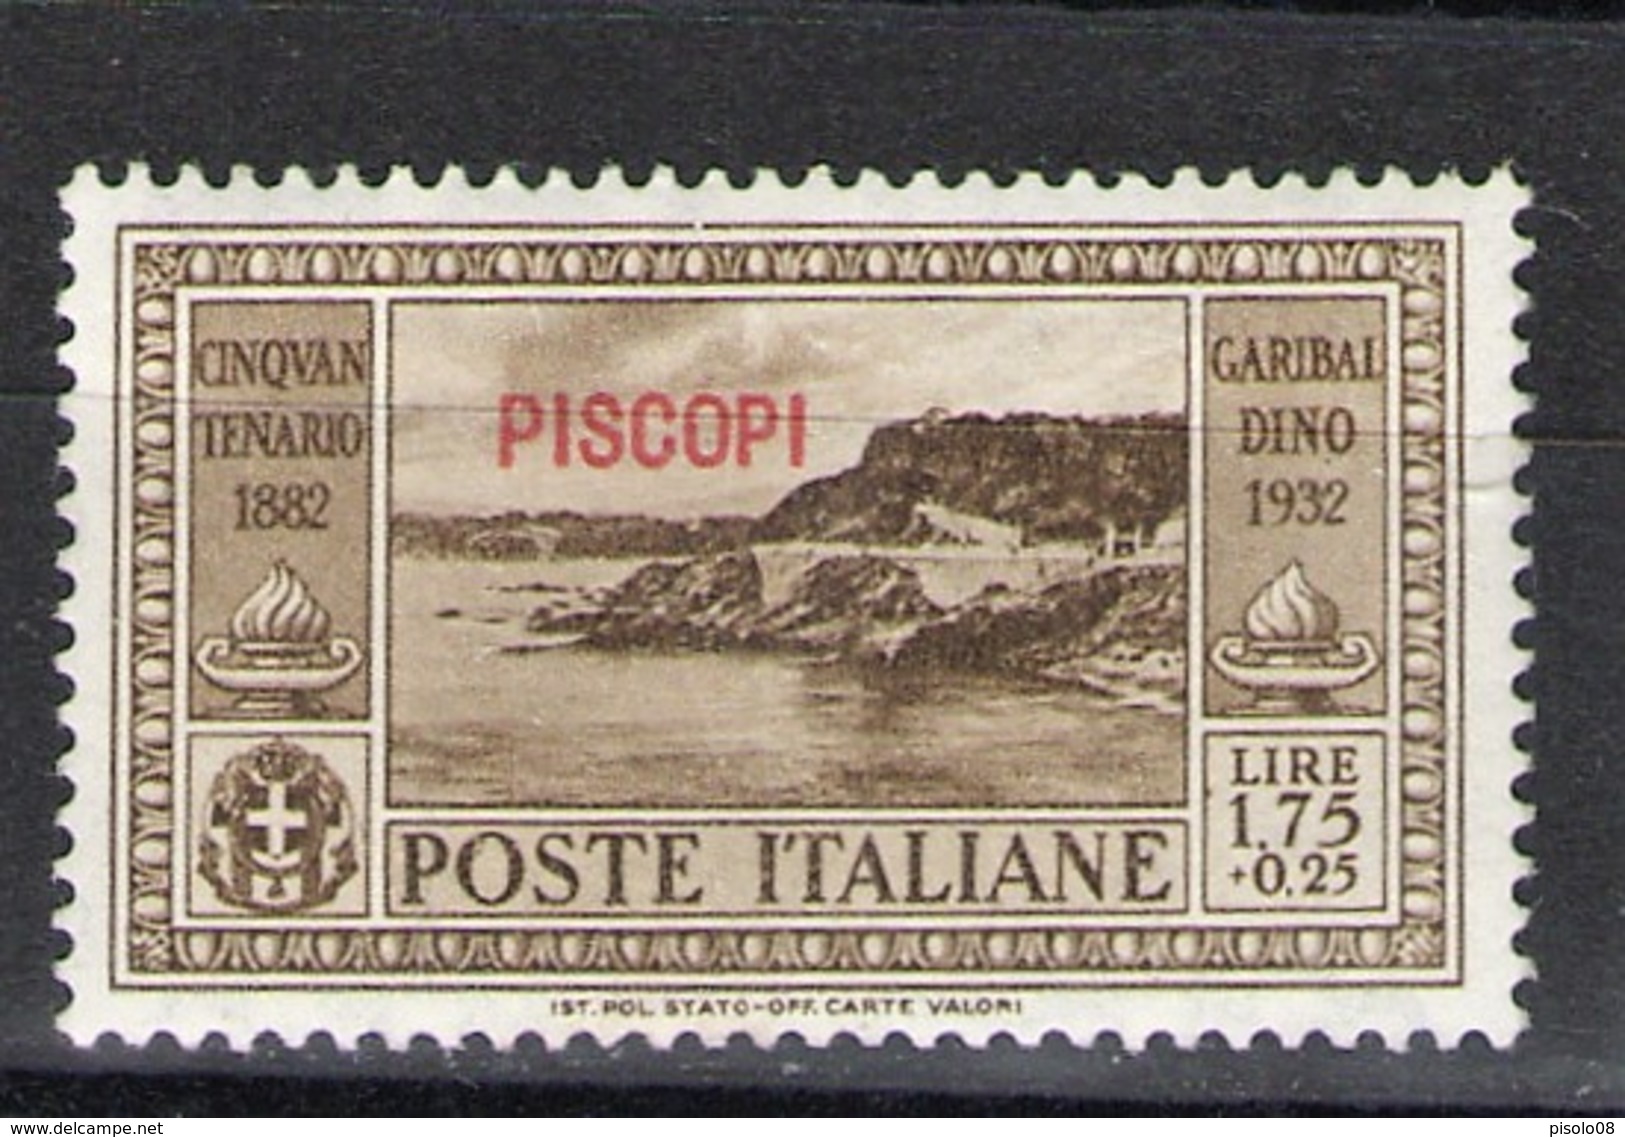 EGEO PISCOPI 1932 GARIBALDI 1,75+25 C ** MNH - Egeo (Caso)